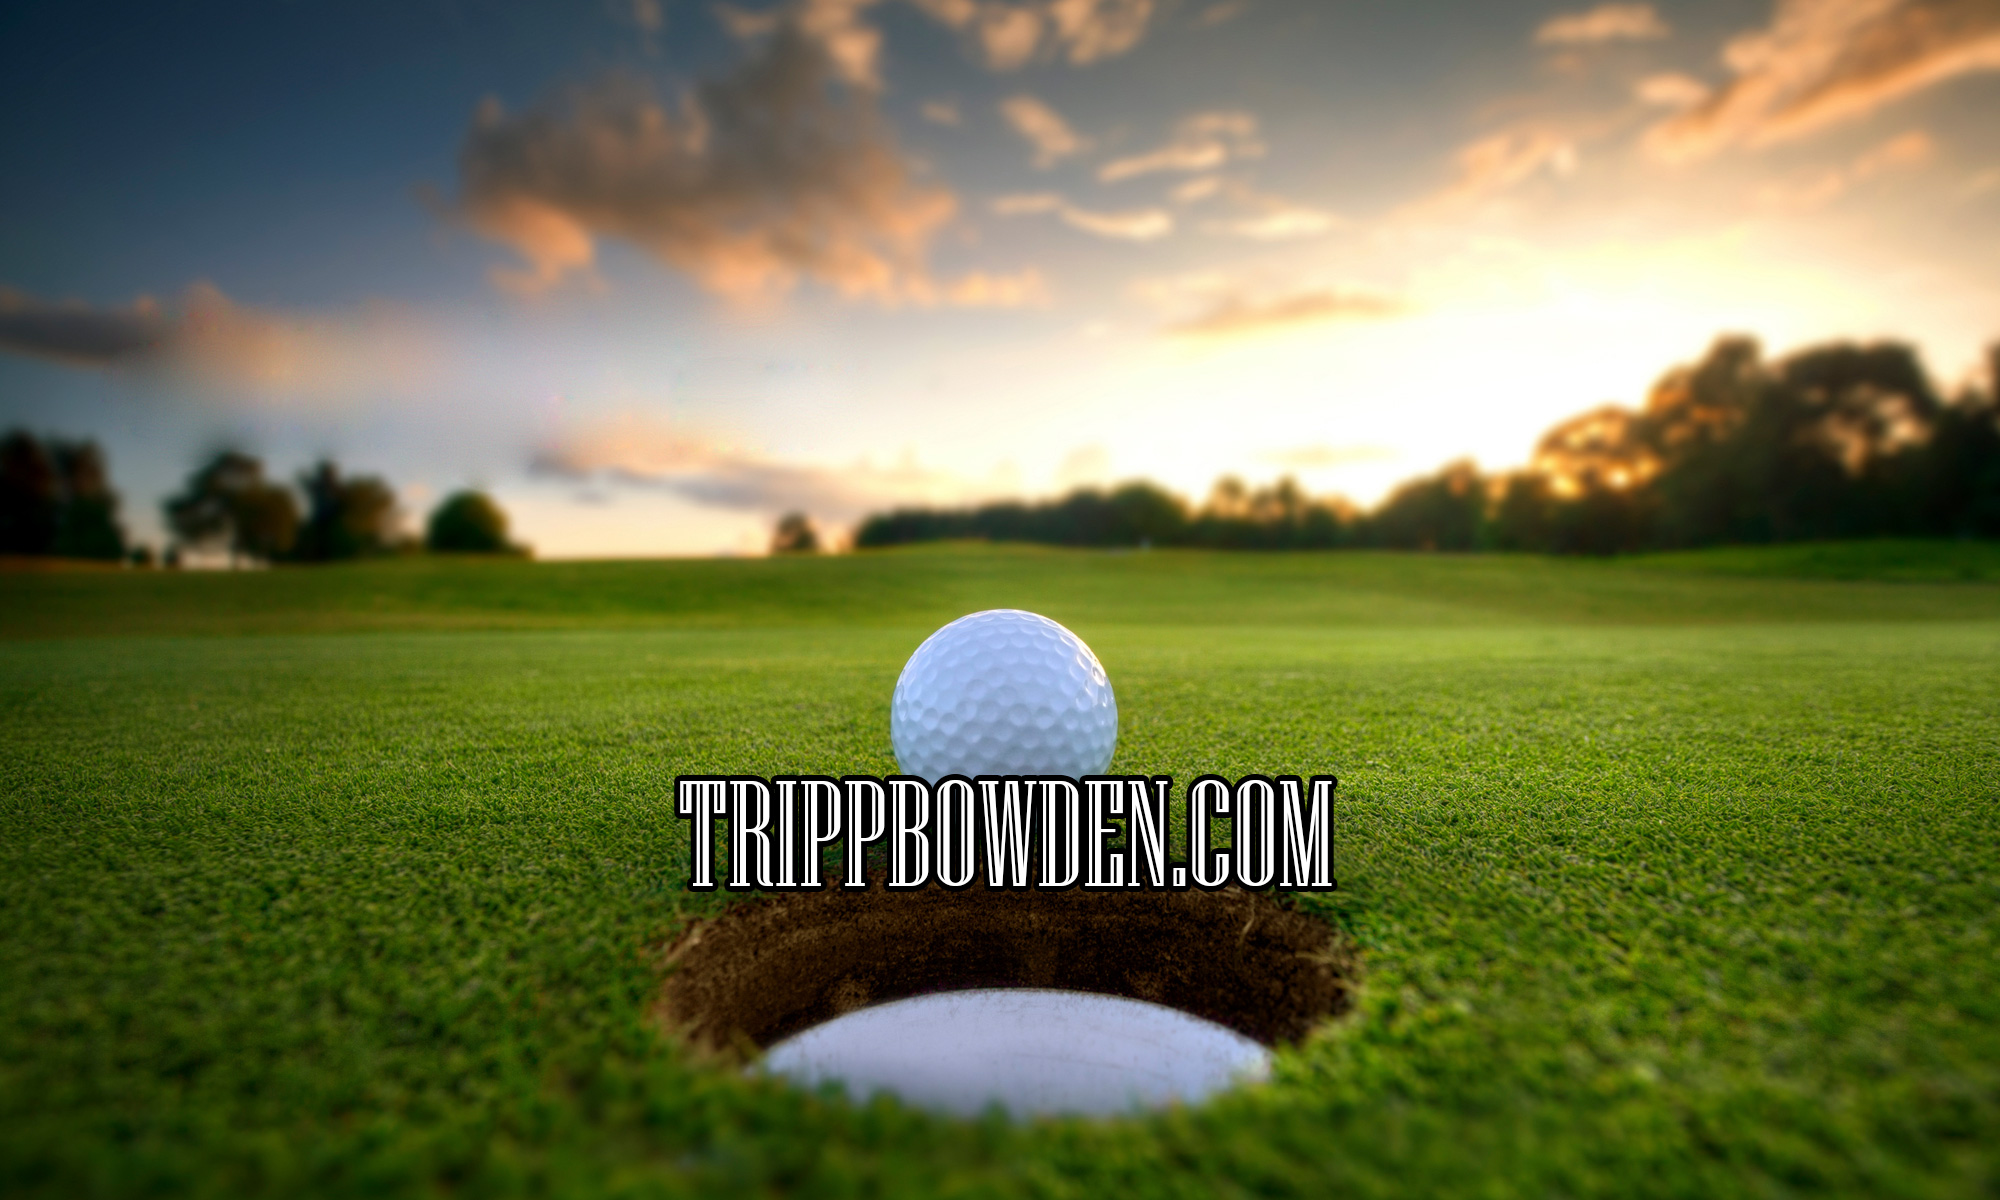 TrippBowden.com